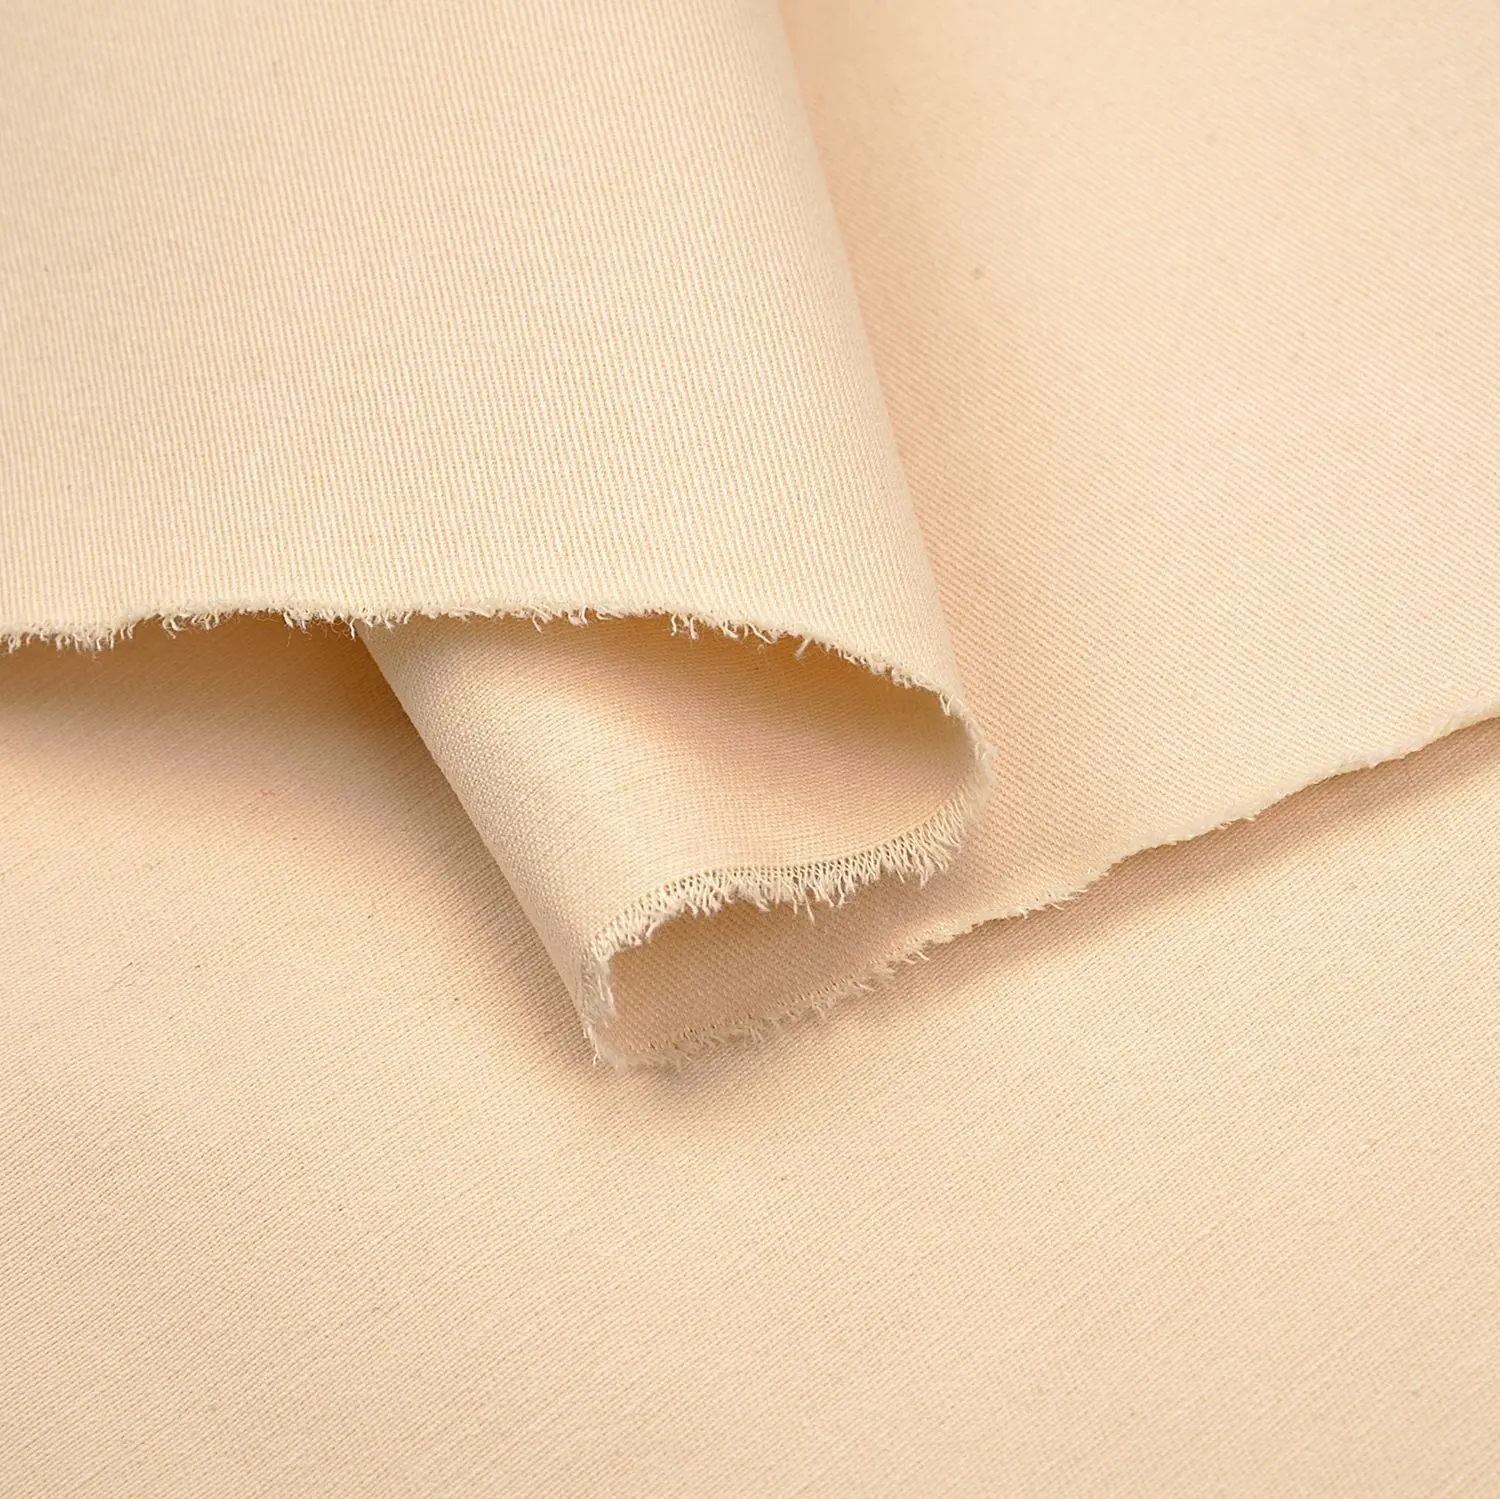 Fabbrica fornitore all'ingrosso di tessuto arancione resistente allo strappo Ripstop stile poliestere cotone tessuto elasticizzato per abbigliamento da lavoro